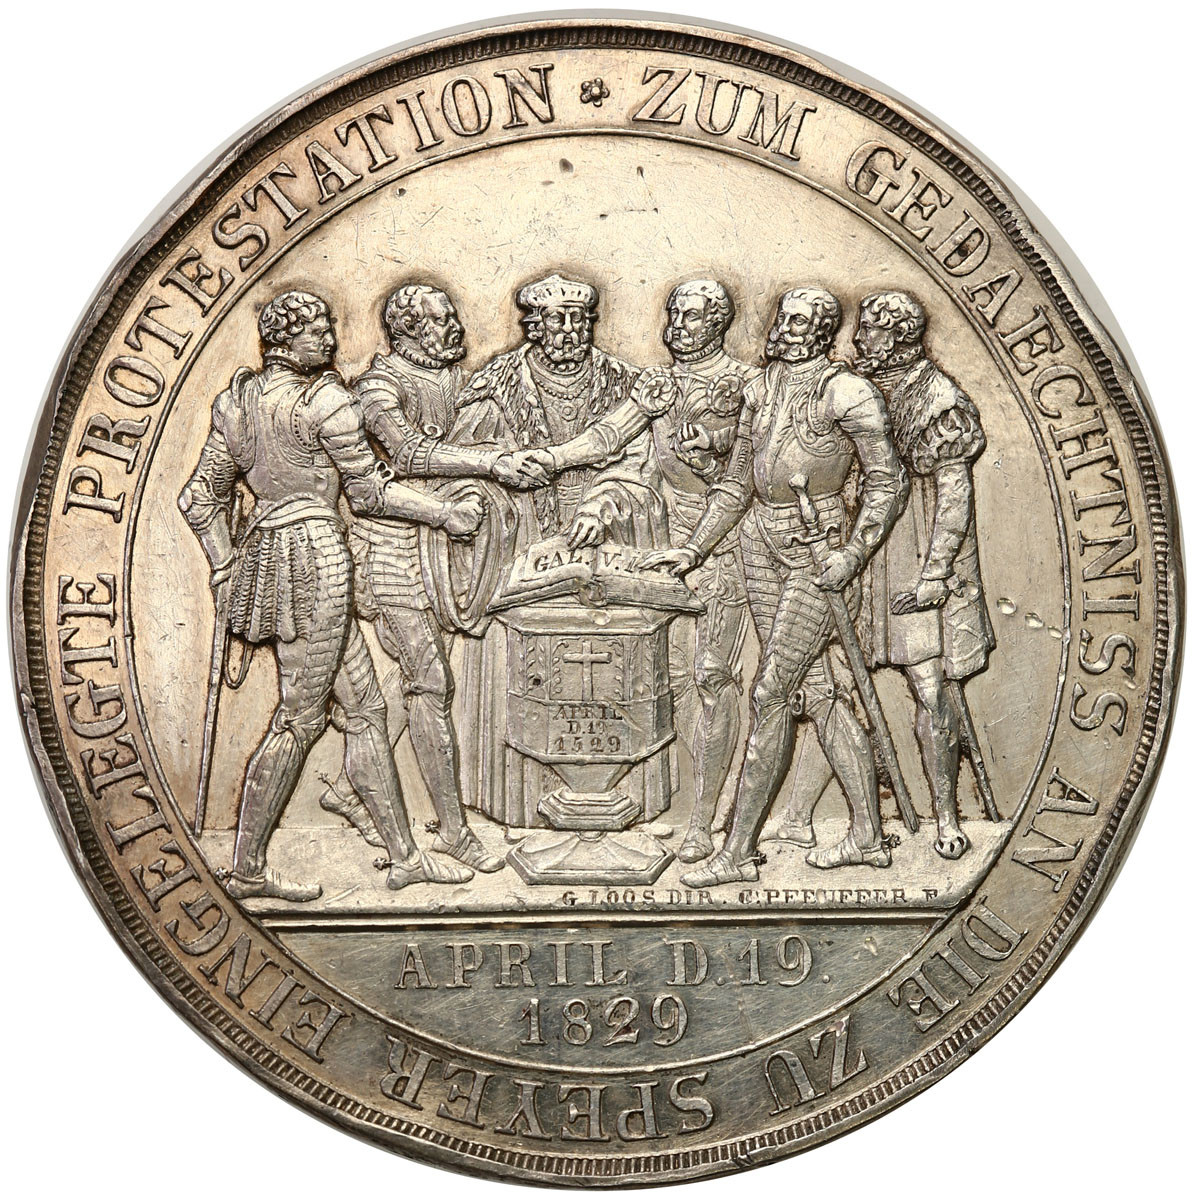 Niemcy, Saksonia. Medal 1829